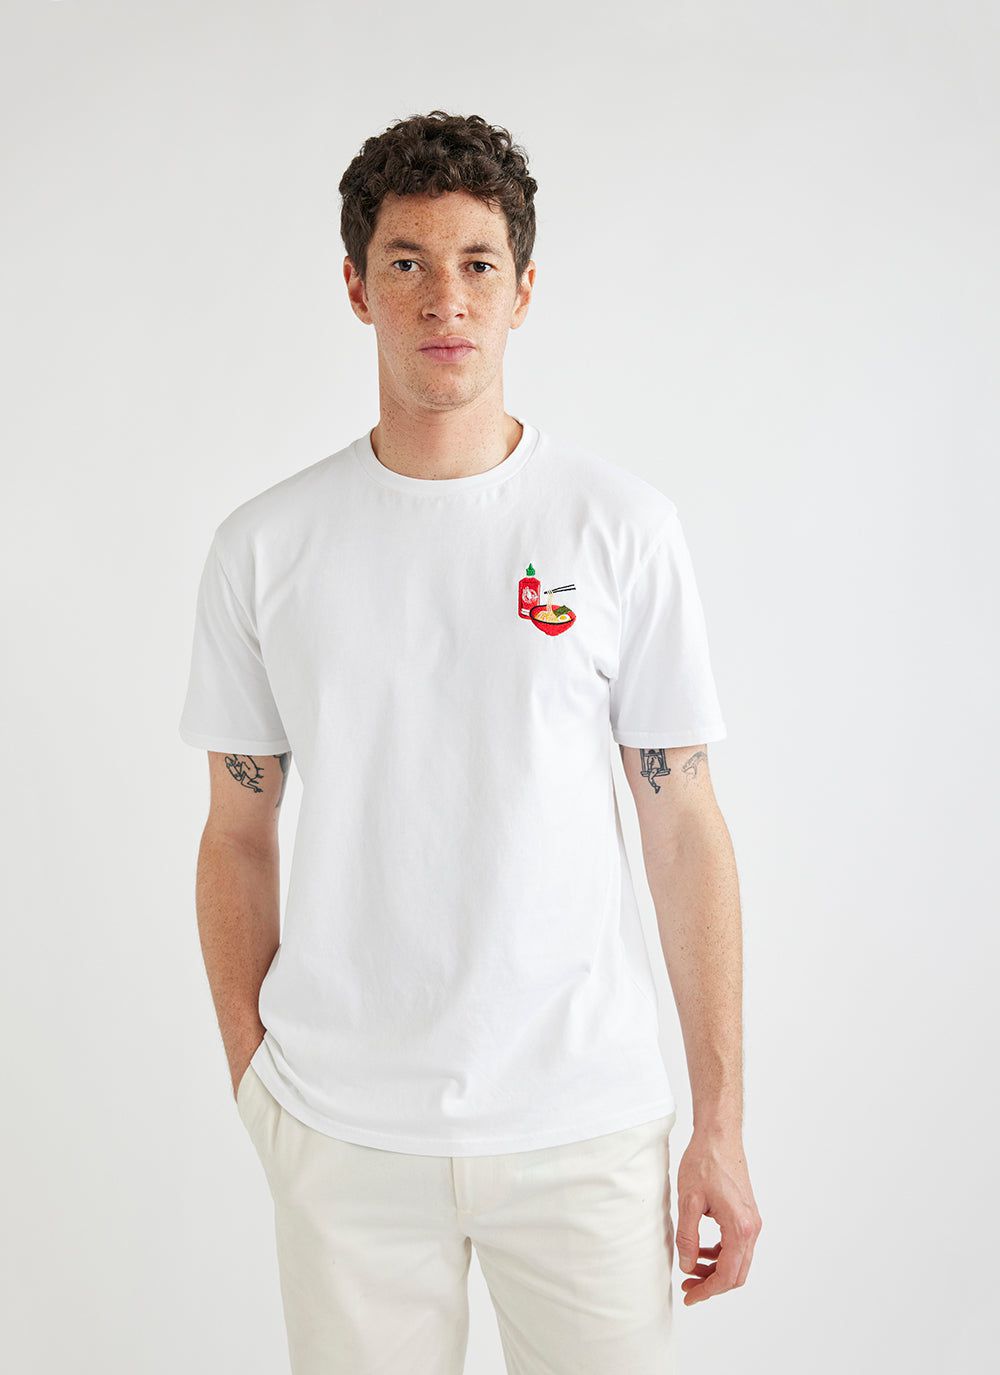 Men's T Shirt | Ramen | Flying Goose x Taste Cadets x Percival | White ...